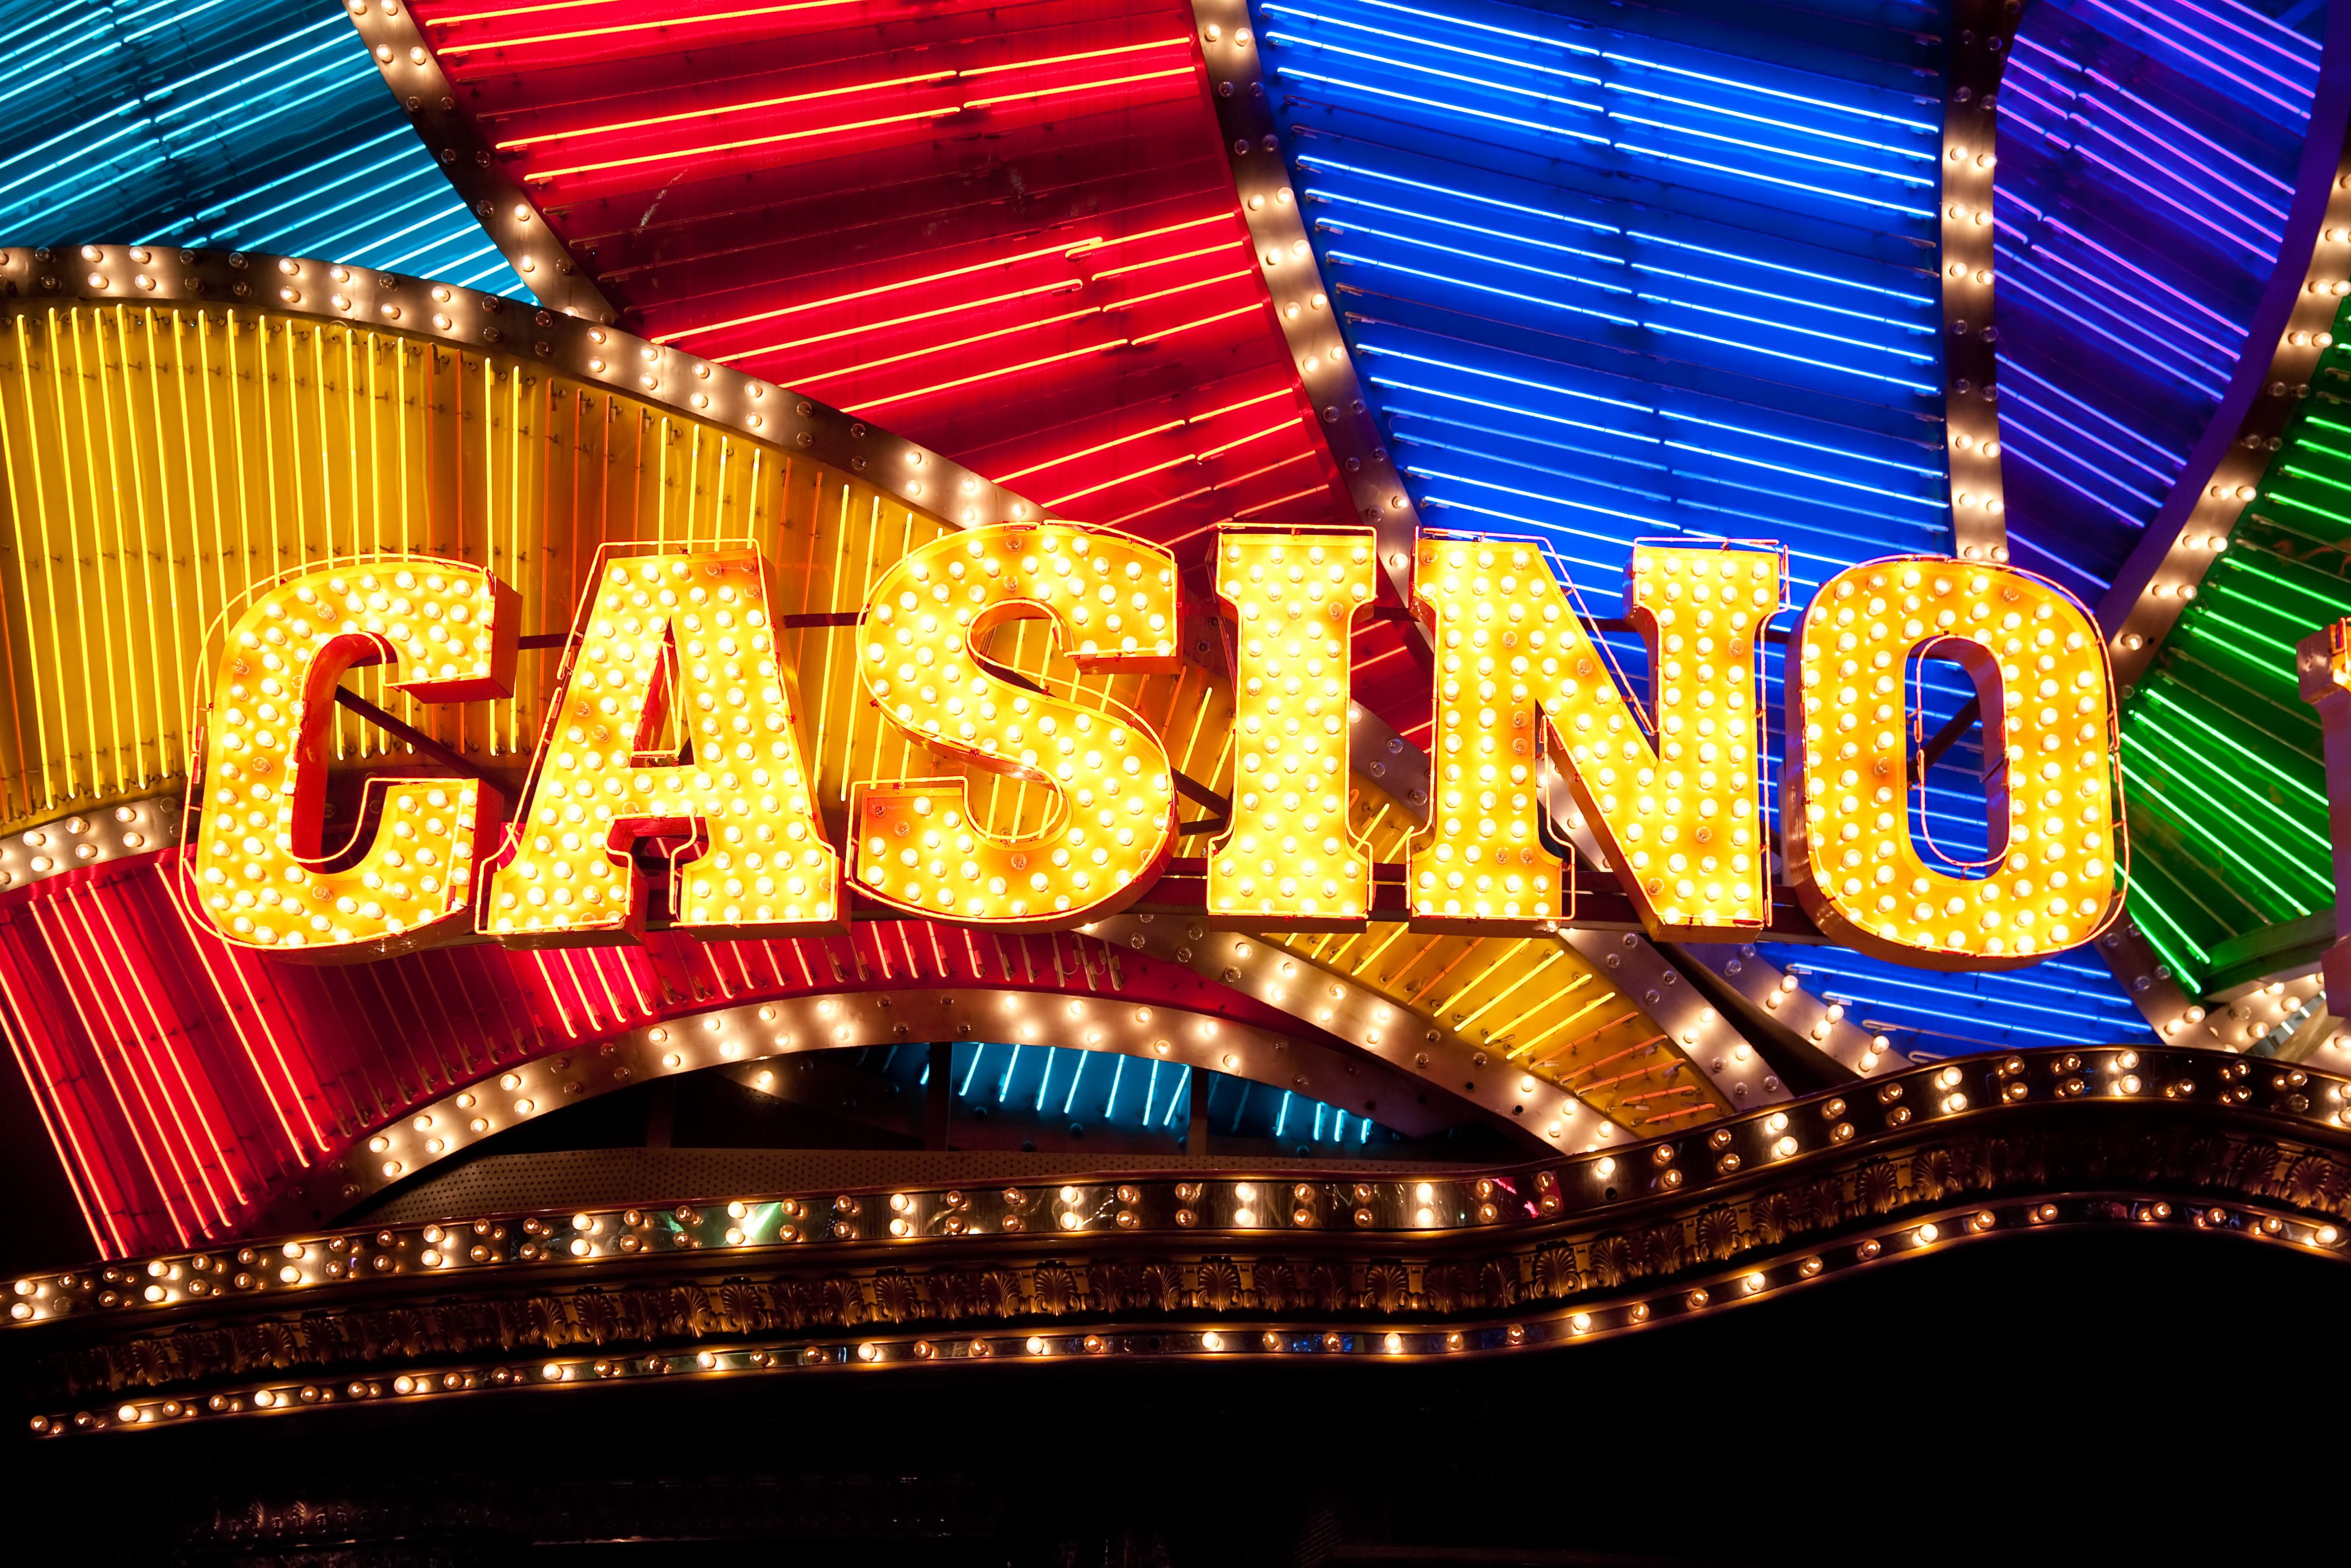 Giocare Alle Slot Machine gratorama casino 70 giri gratis recensioni Gratis In assenza di Deporre